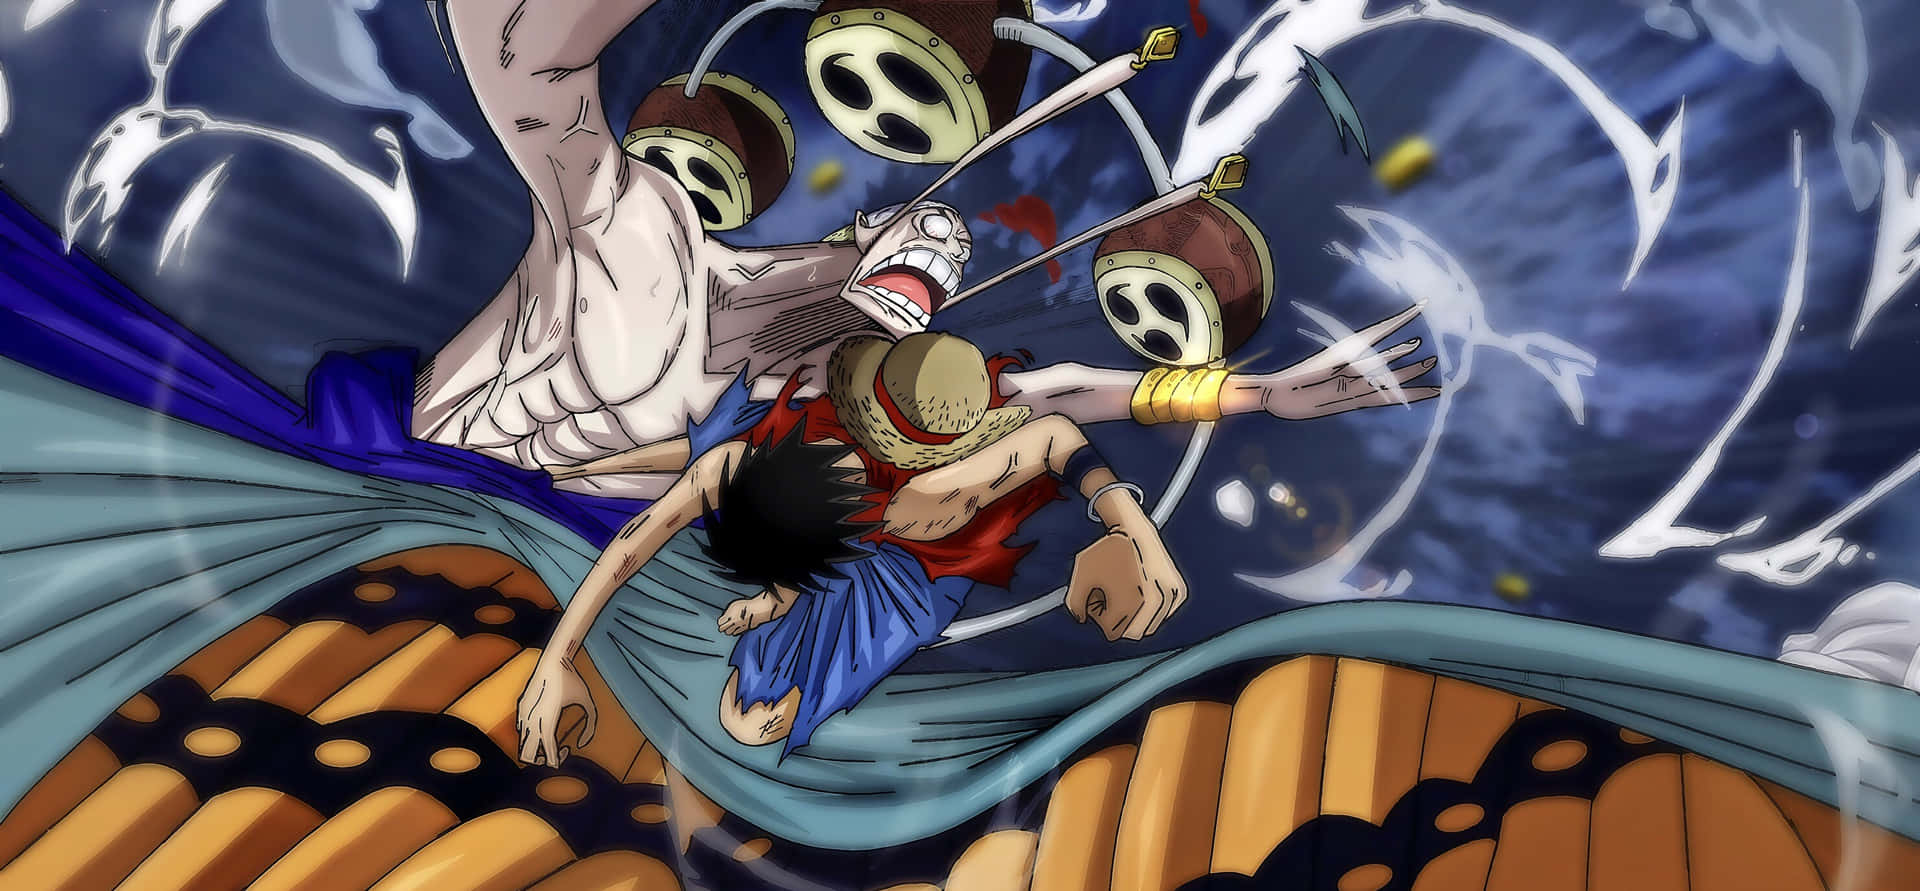 Enel,el Dios Del Rayo De Skypiea Del Anime One Piece. Fondo de pantalla